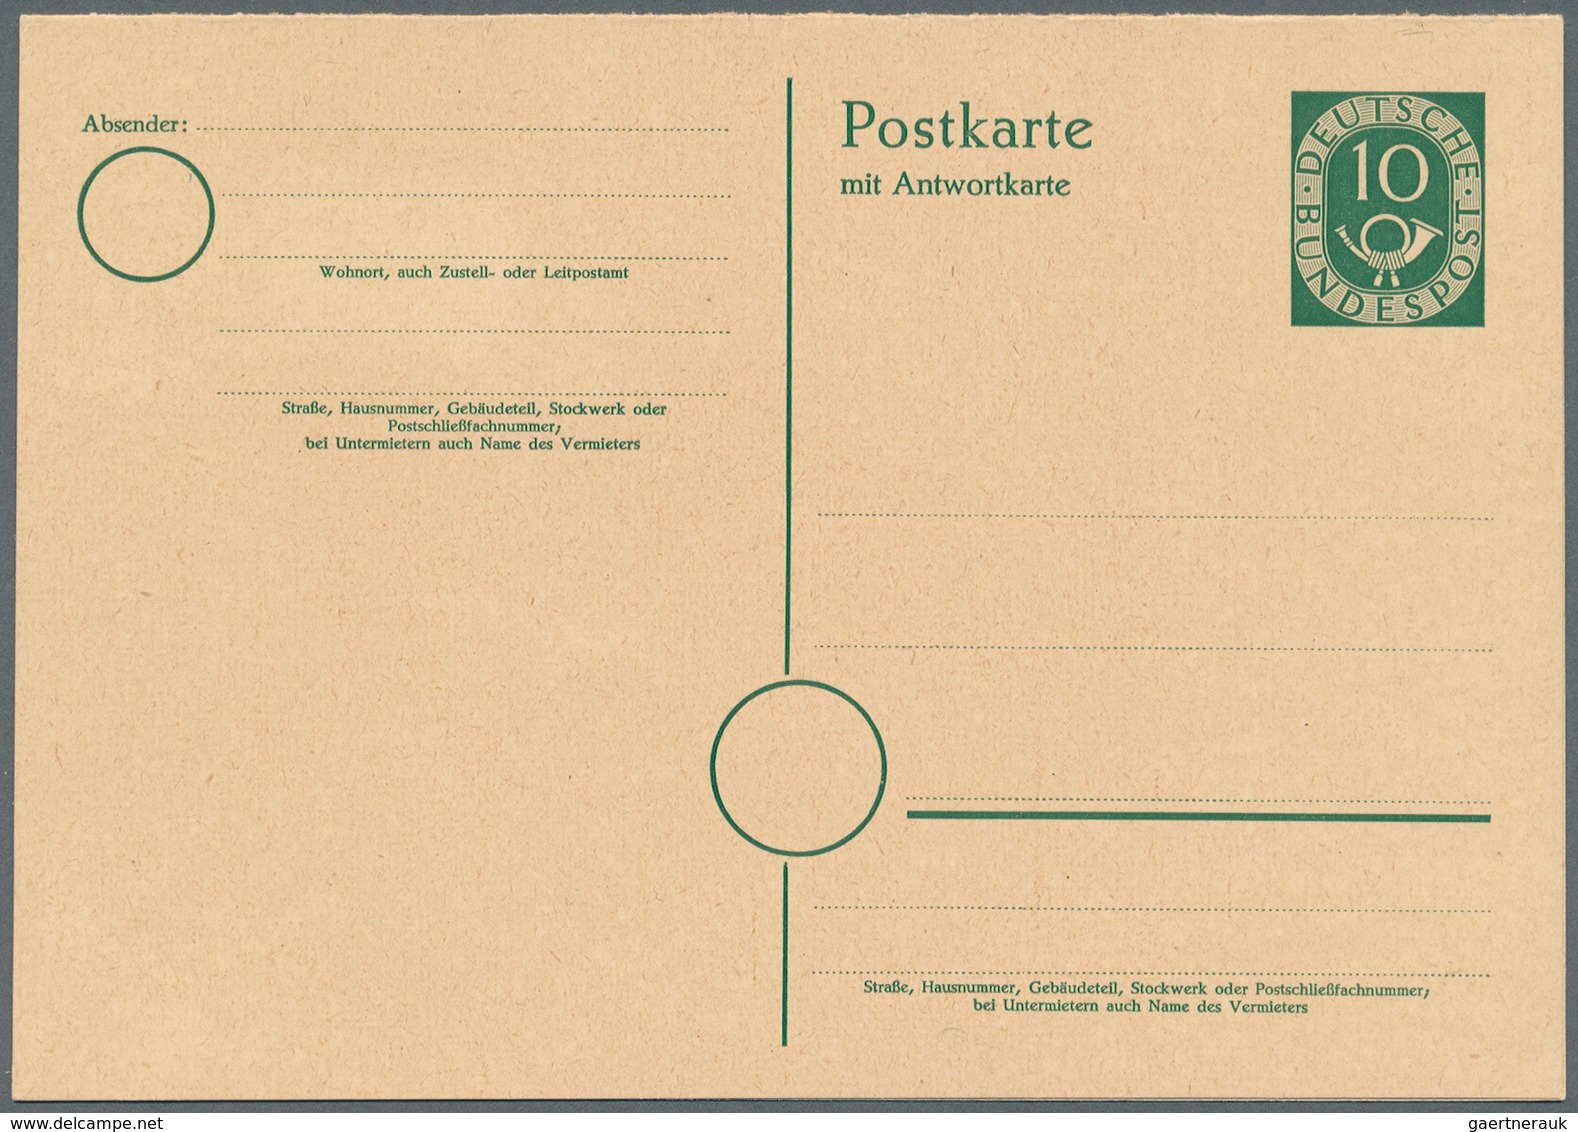 32847 Bundesrepublik - Ganzsachen: 1948/2008, umfangreiche und gehaltvolle Sammlung von 454 nur versch. am